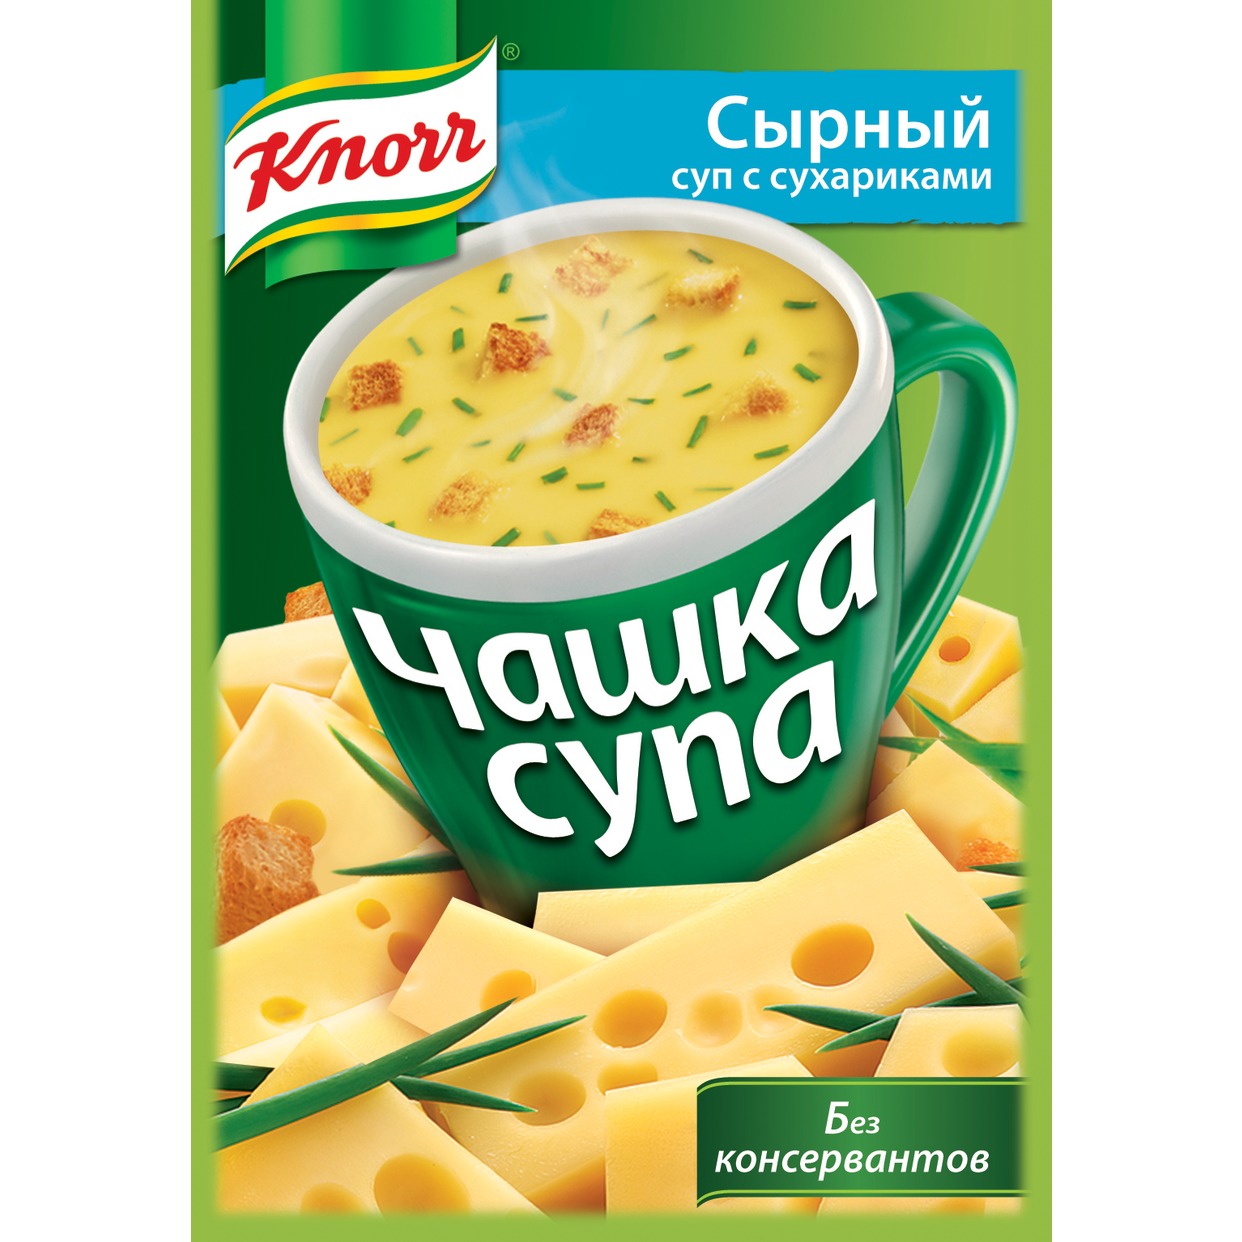 Суп Knorr Чашка Супа Сырный с сухариками 15.6г по акции в Пятерочке